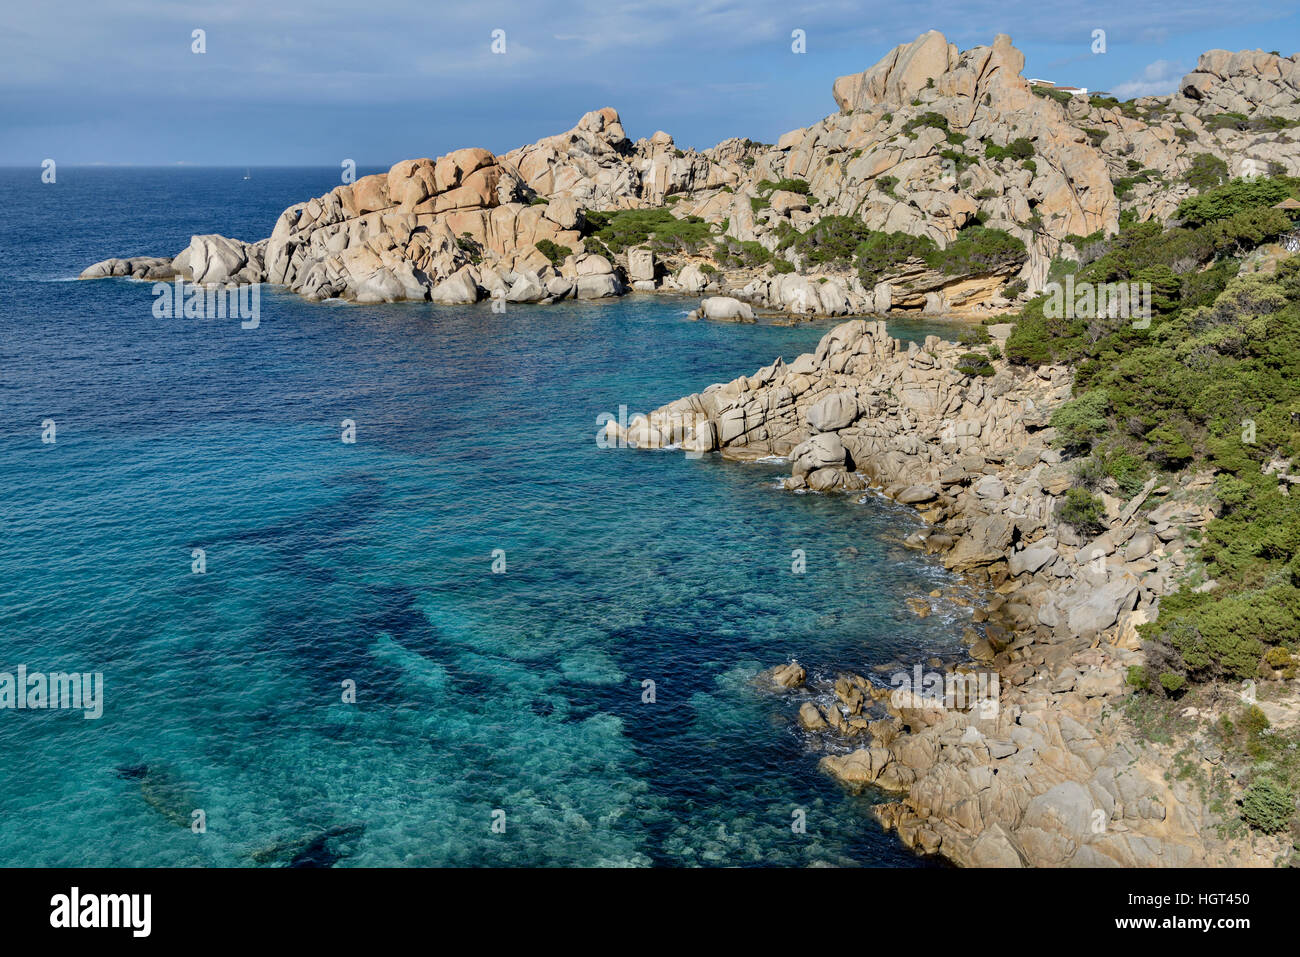 Rugged rocky coast, Capo Testa Peninsula, Santa Teresa de Gallura, Sardinia, Italy Stock Photo